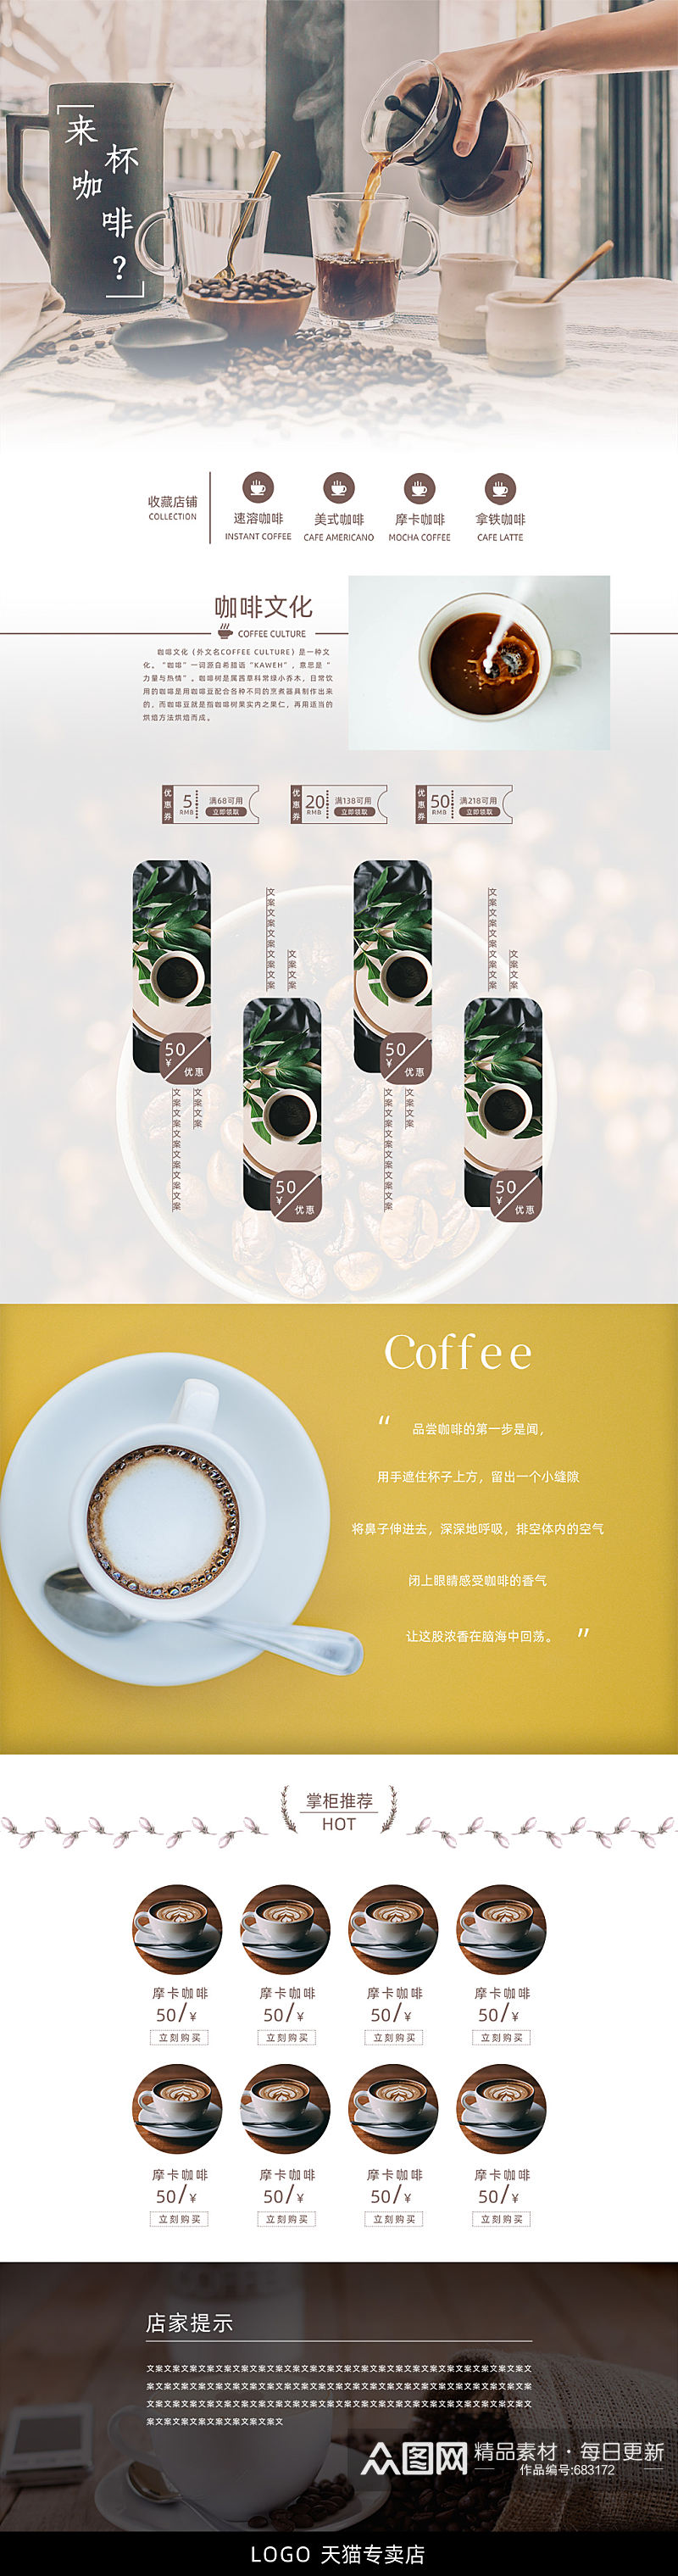 美味咖啡活动首页设计素材